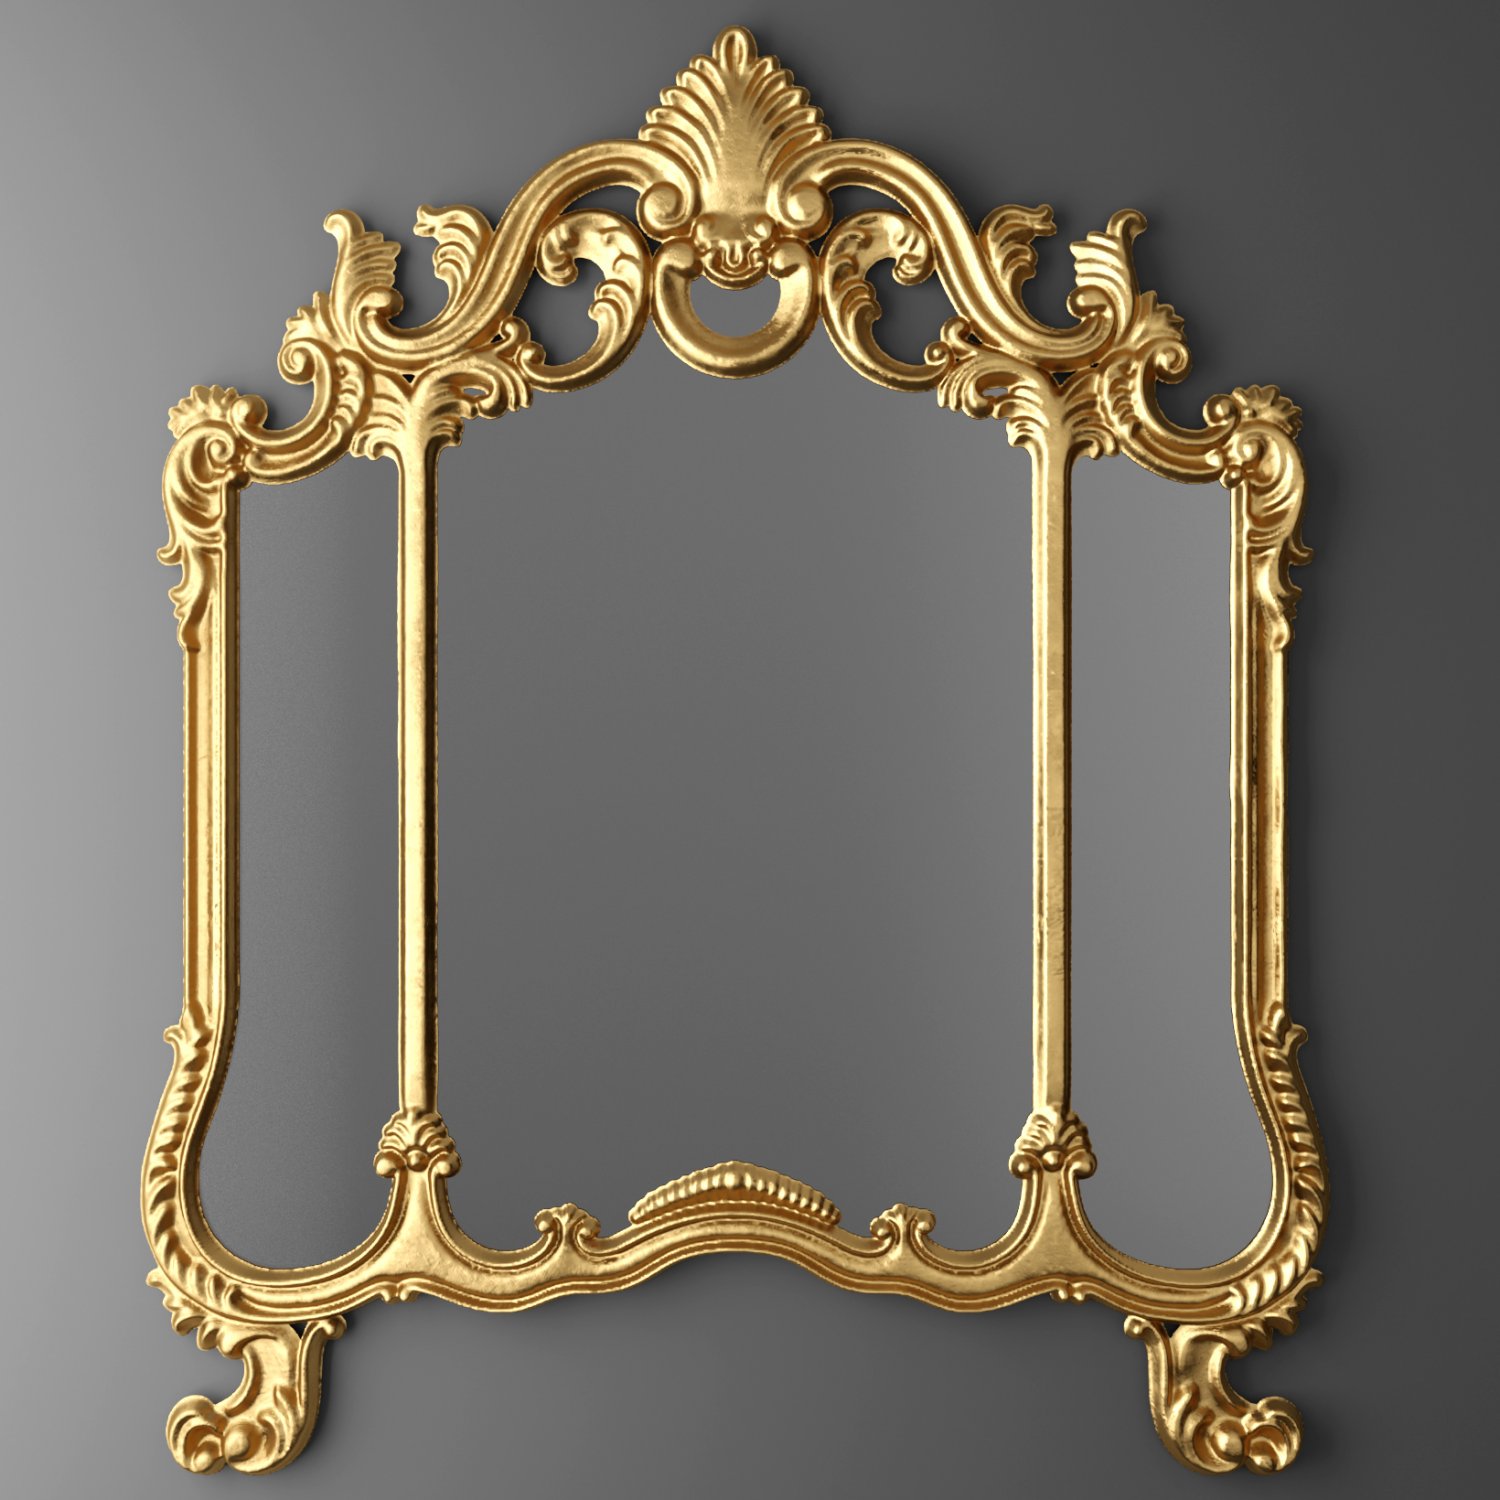 Classic 3.3. Arco Decor Classica зеркало. Рамка для зеркала классическая. Классическое антикварное зеркало. Зеркало в викторианском стиле.